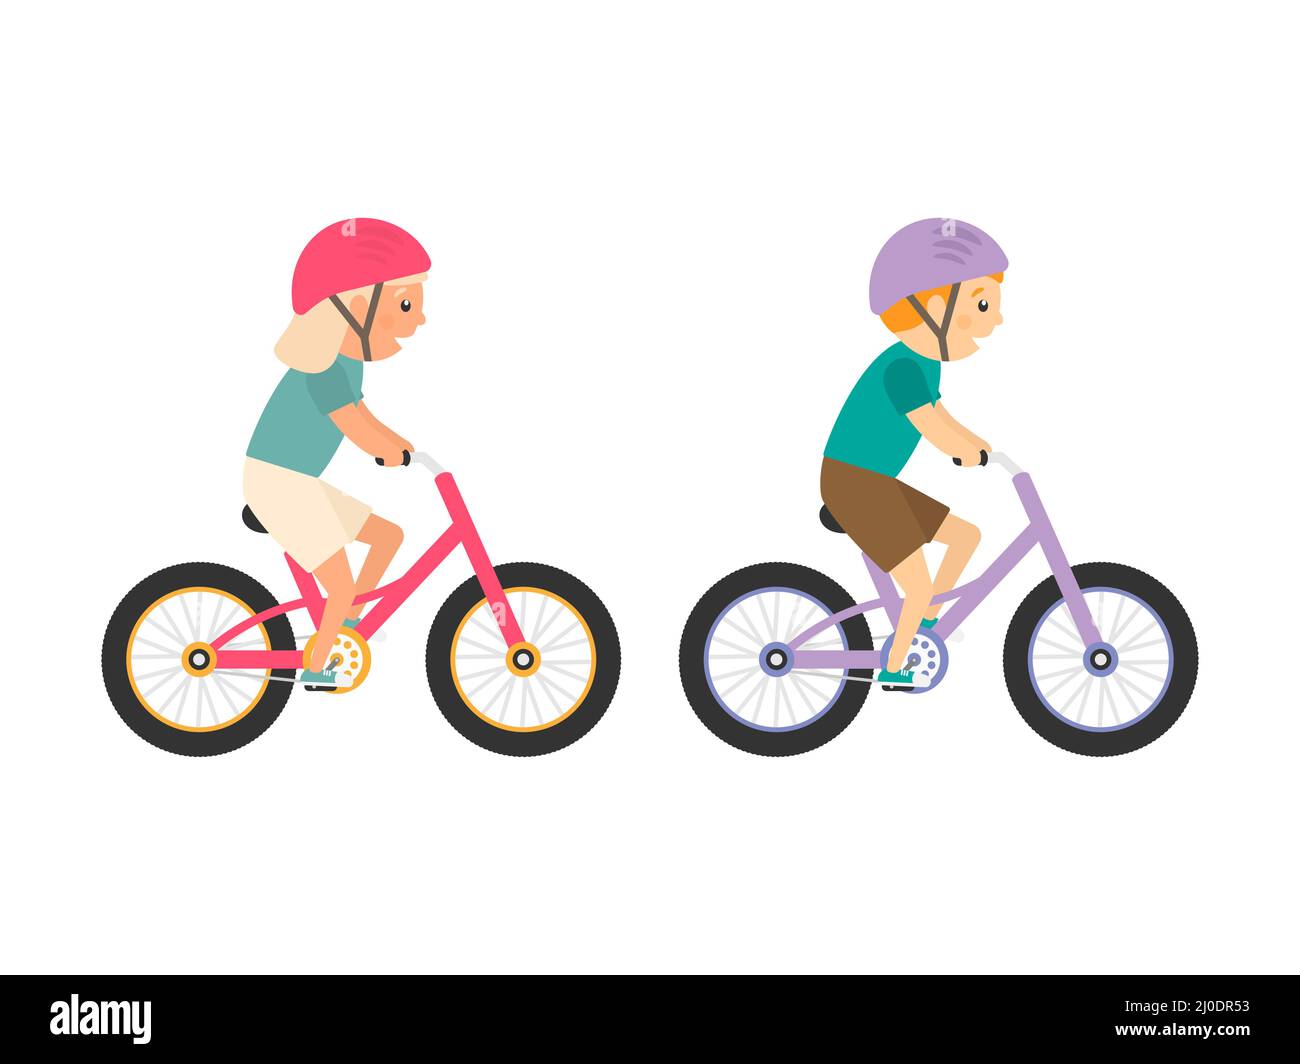 Nette glückliche Kinder, die Fahrräder reiten. Mädchen und Jungen fahren Fahrräder. Gesunder Lebensstil. Stock Vektor